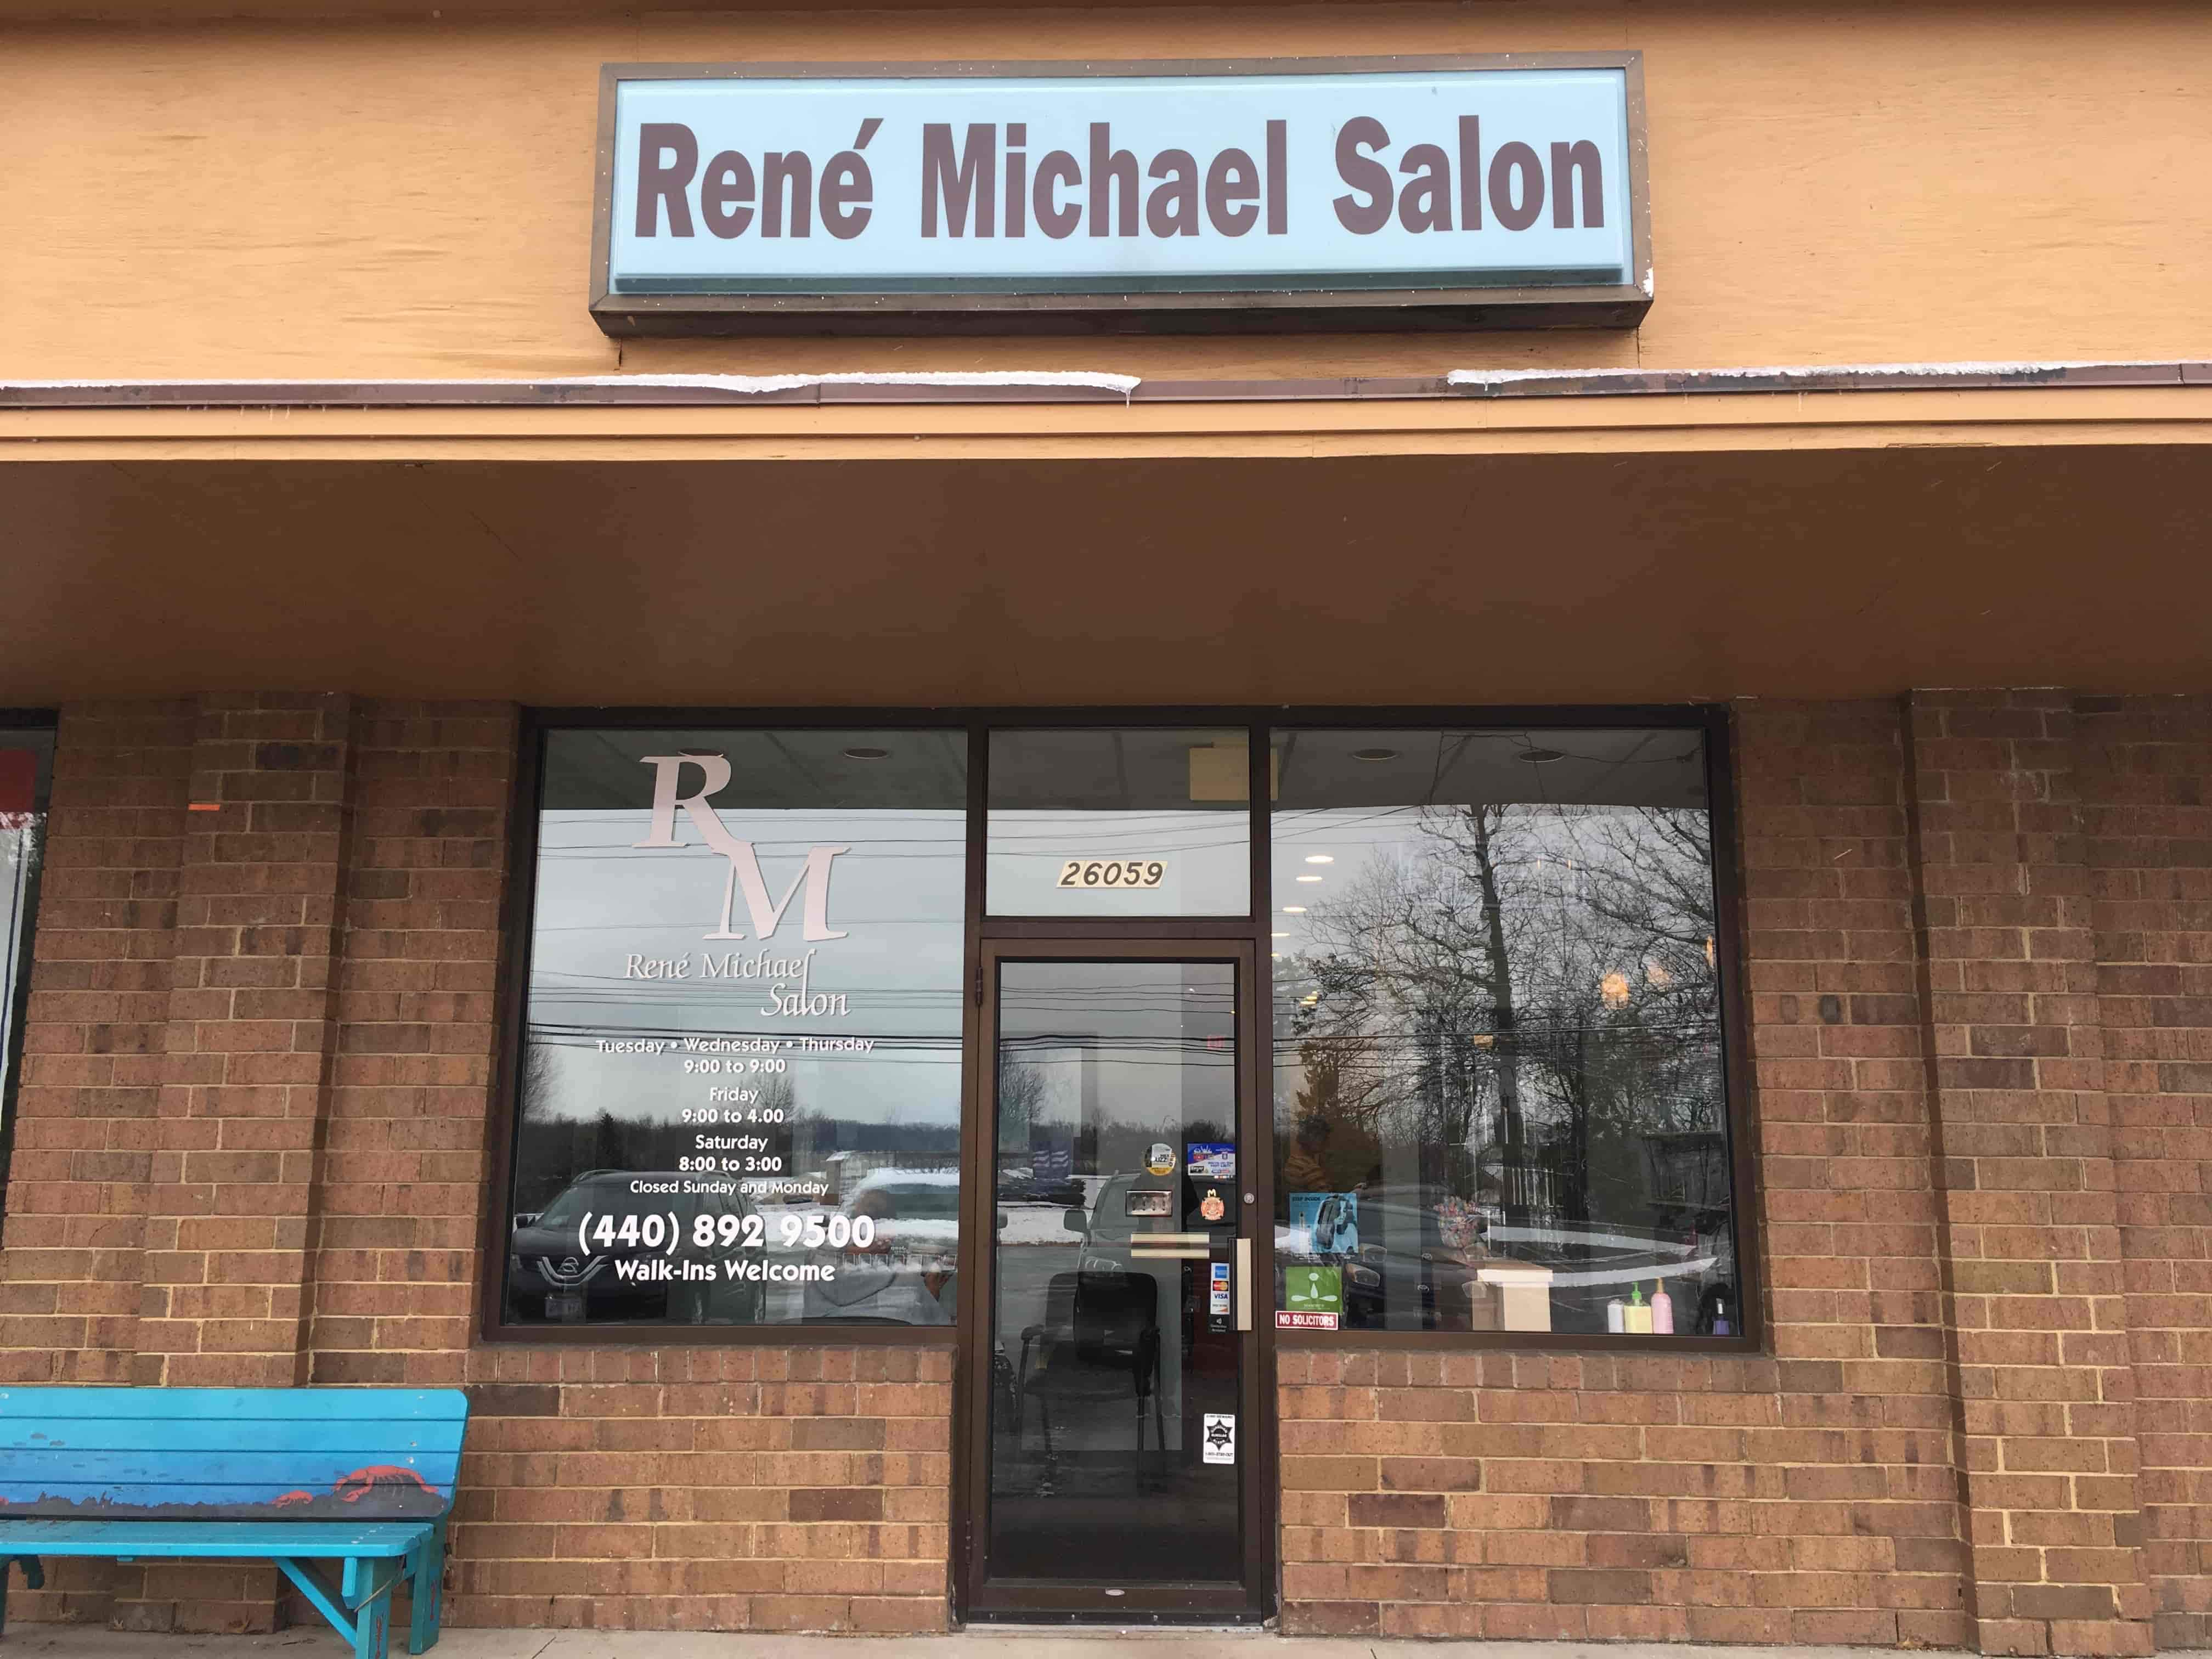 René Michael Salon Storefront